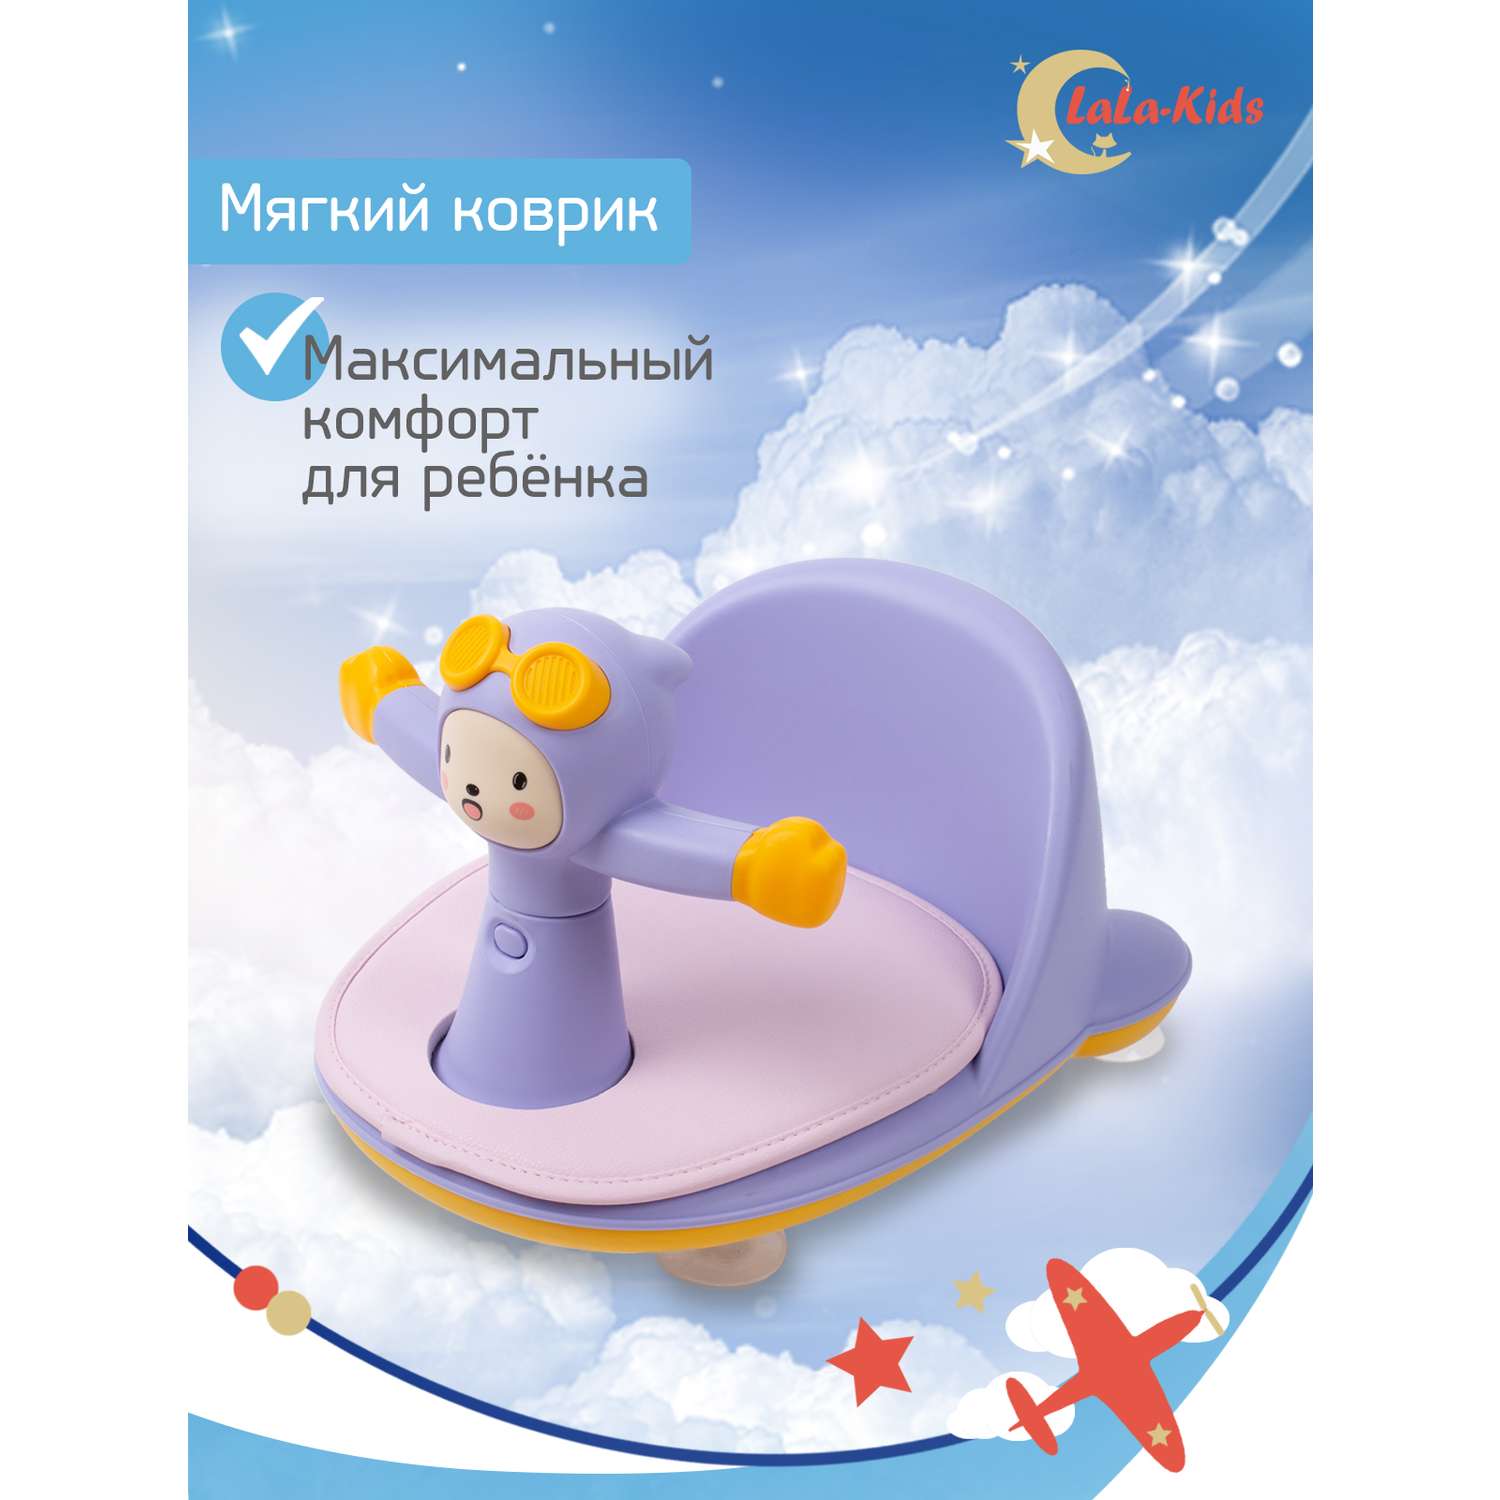 Сиденье LaLa-Kids для купания с мягким ковриком Летчик сиреневое - фото 4